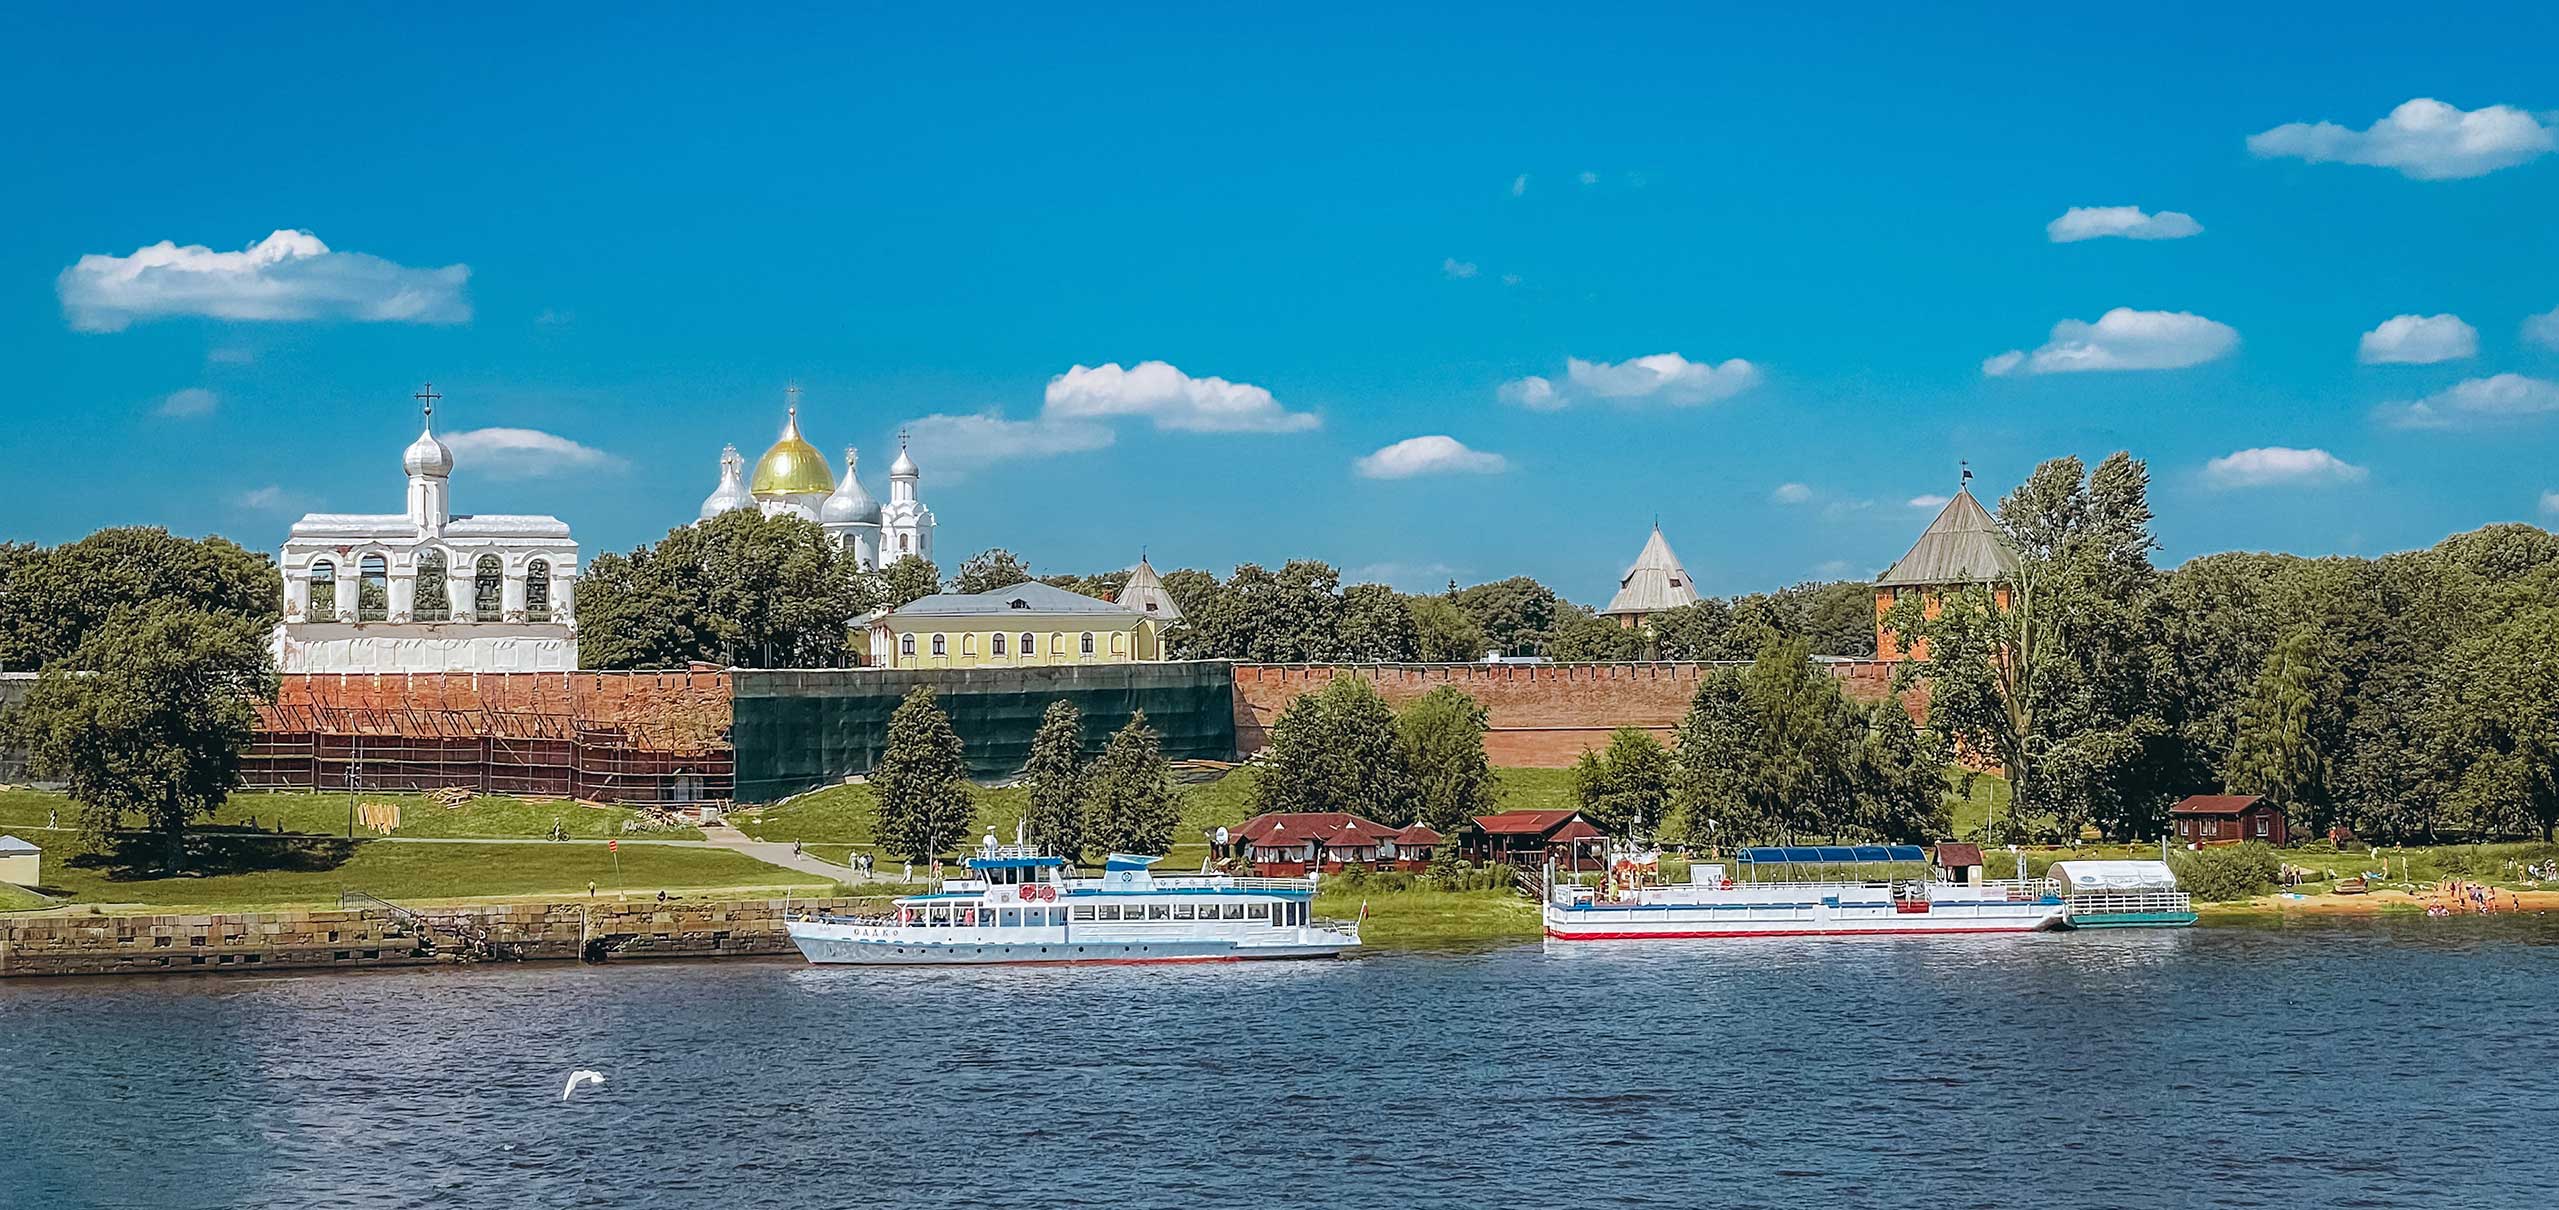 Новгород.  Колыбель и забвение демократии 2